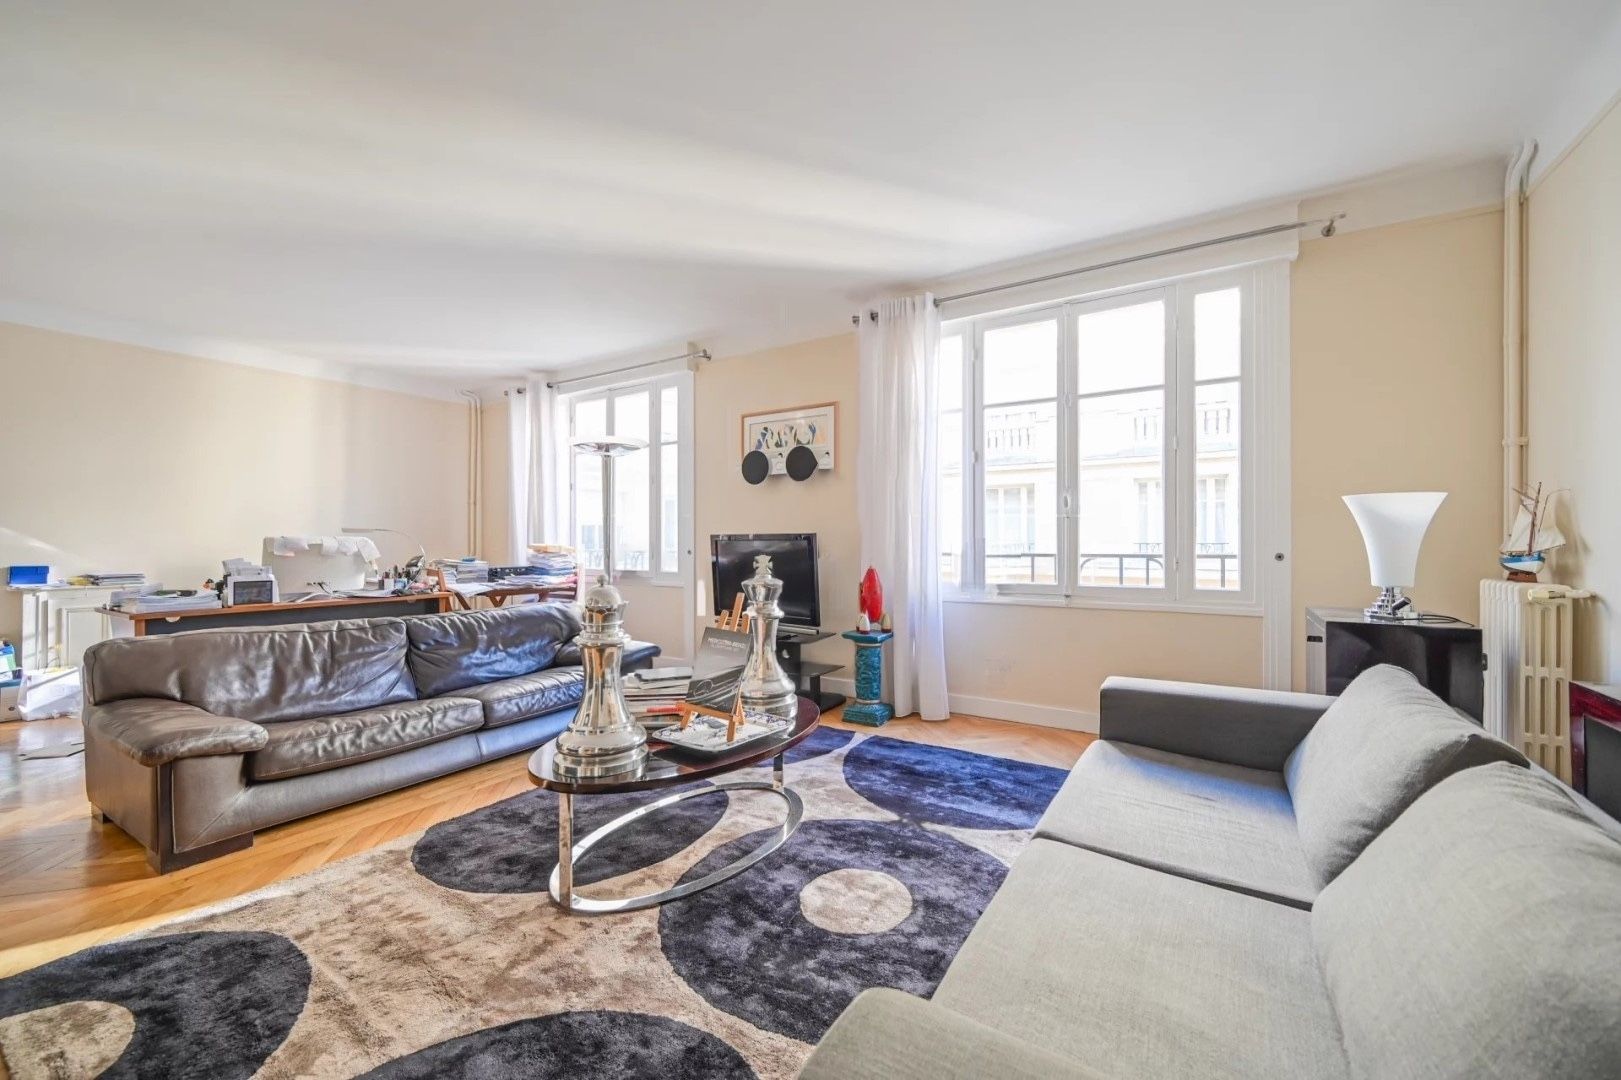 Appartement T3 (84 m²) en vente dans le 16e arrondissement de Paris